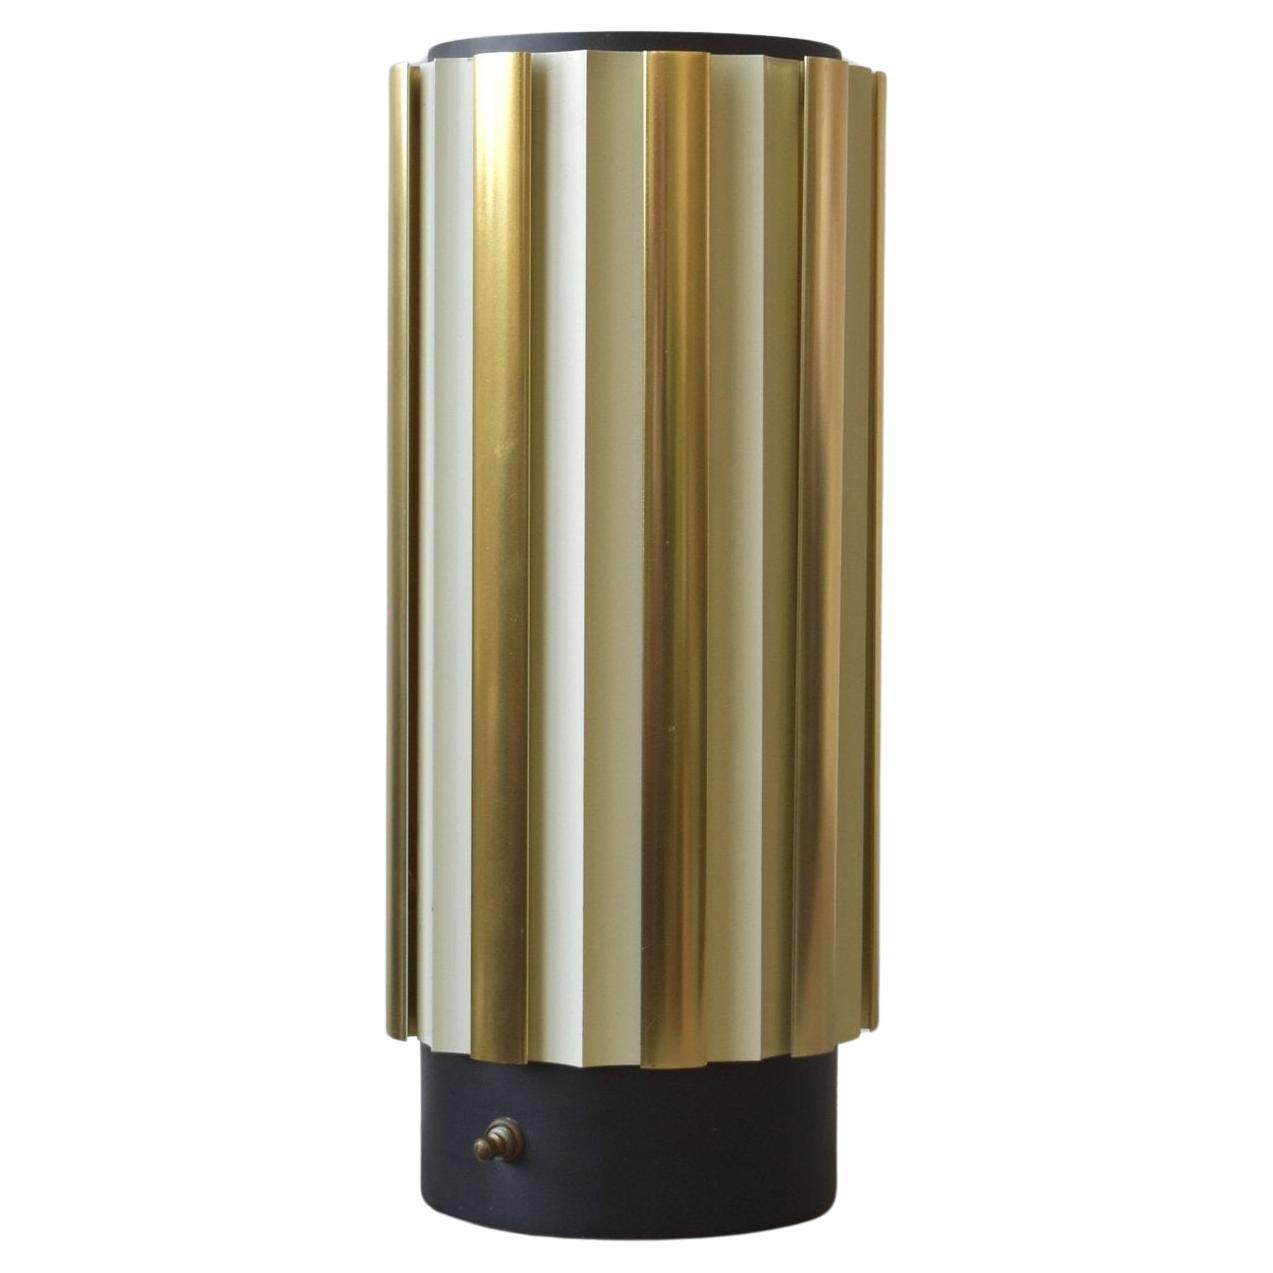 Vintage-Lampe aus gedrechseltem Metall, Gerald Thurston für Lightolier zugeschrieben, 1960er Jahre